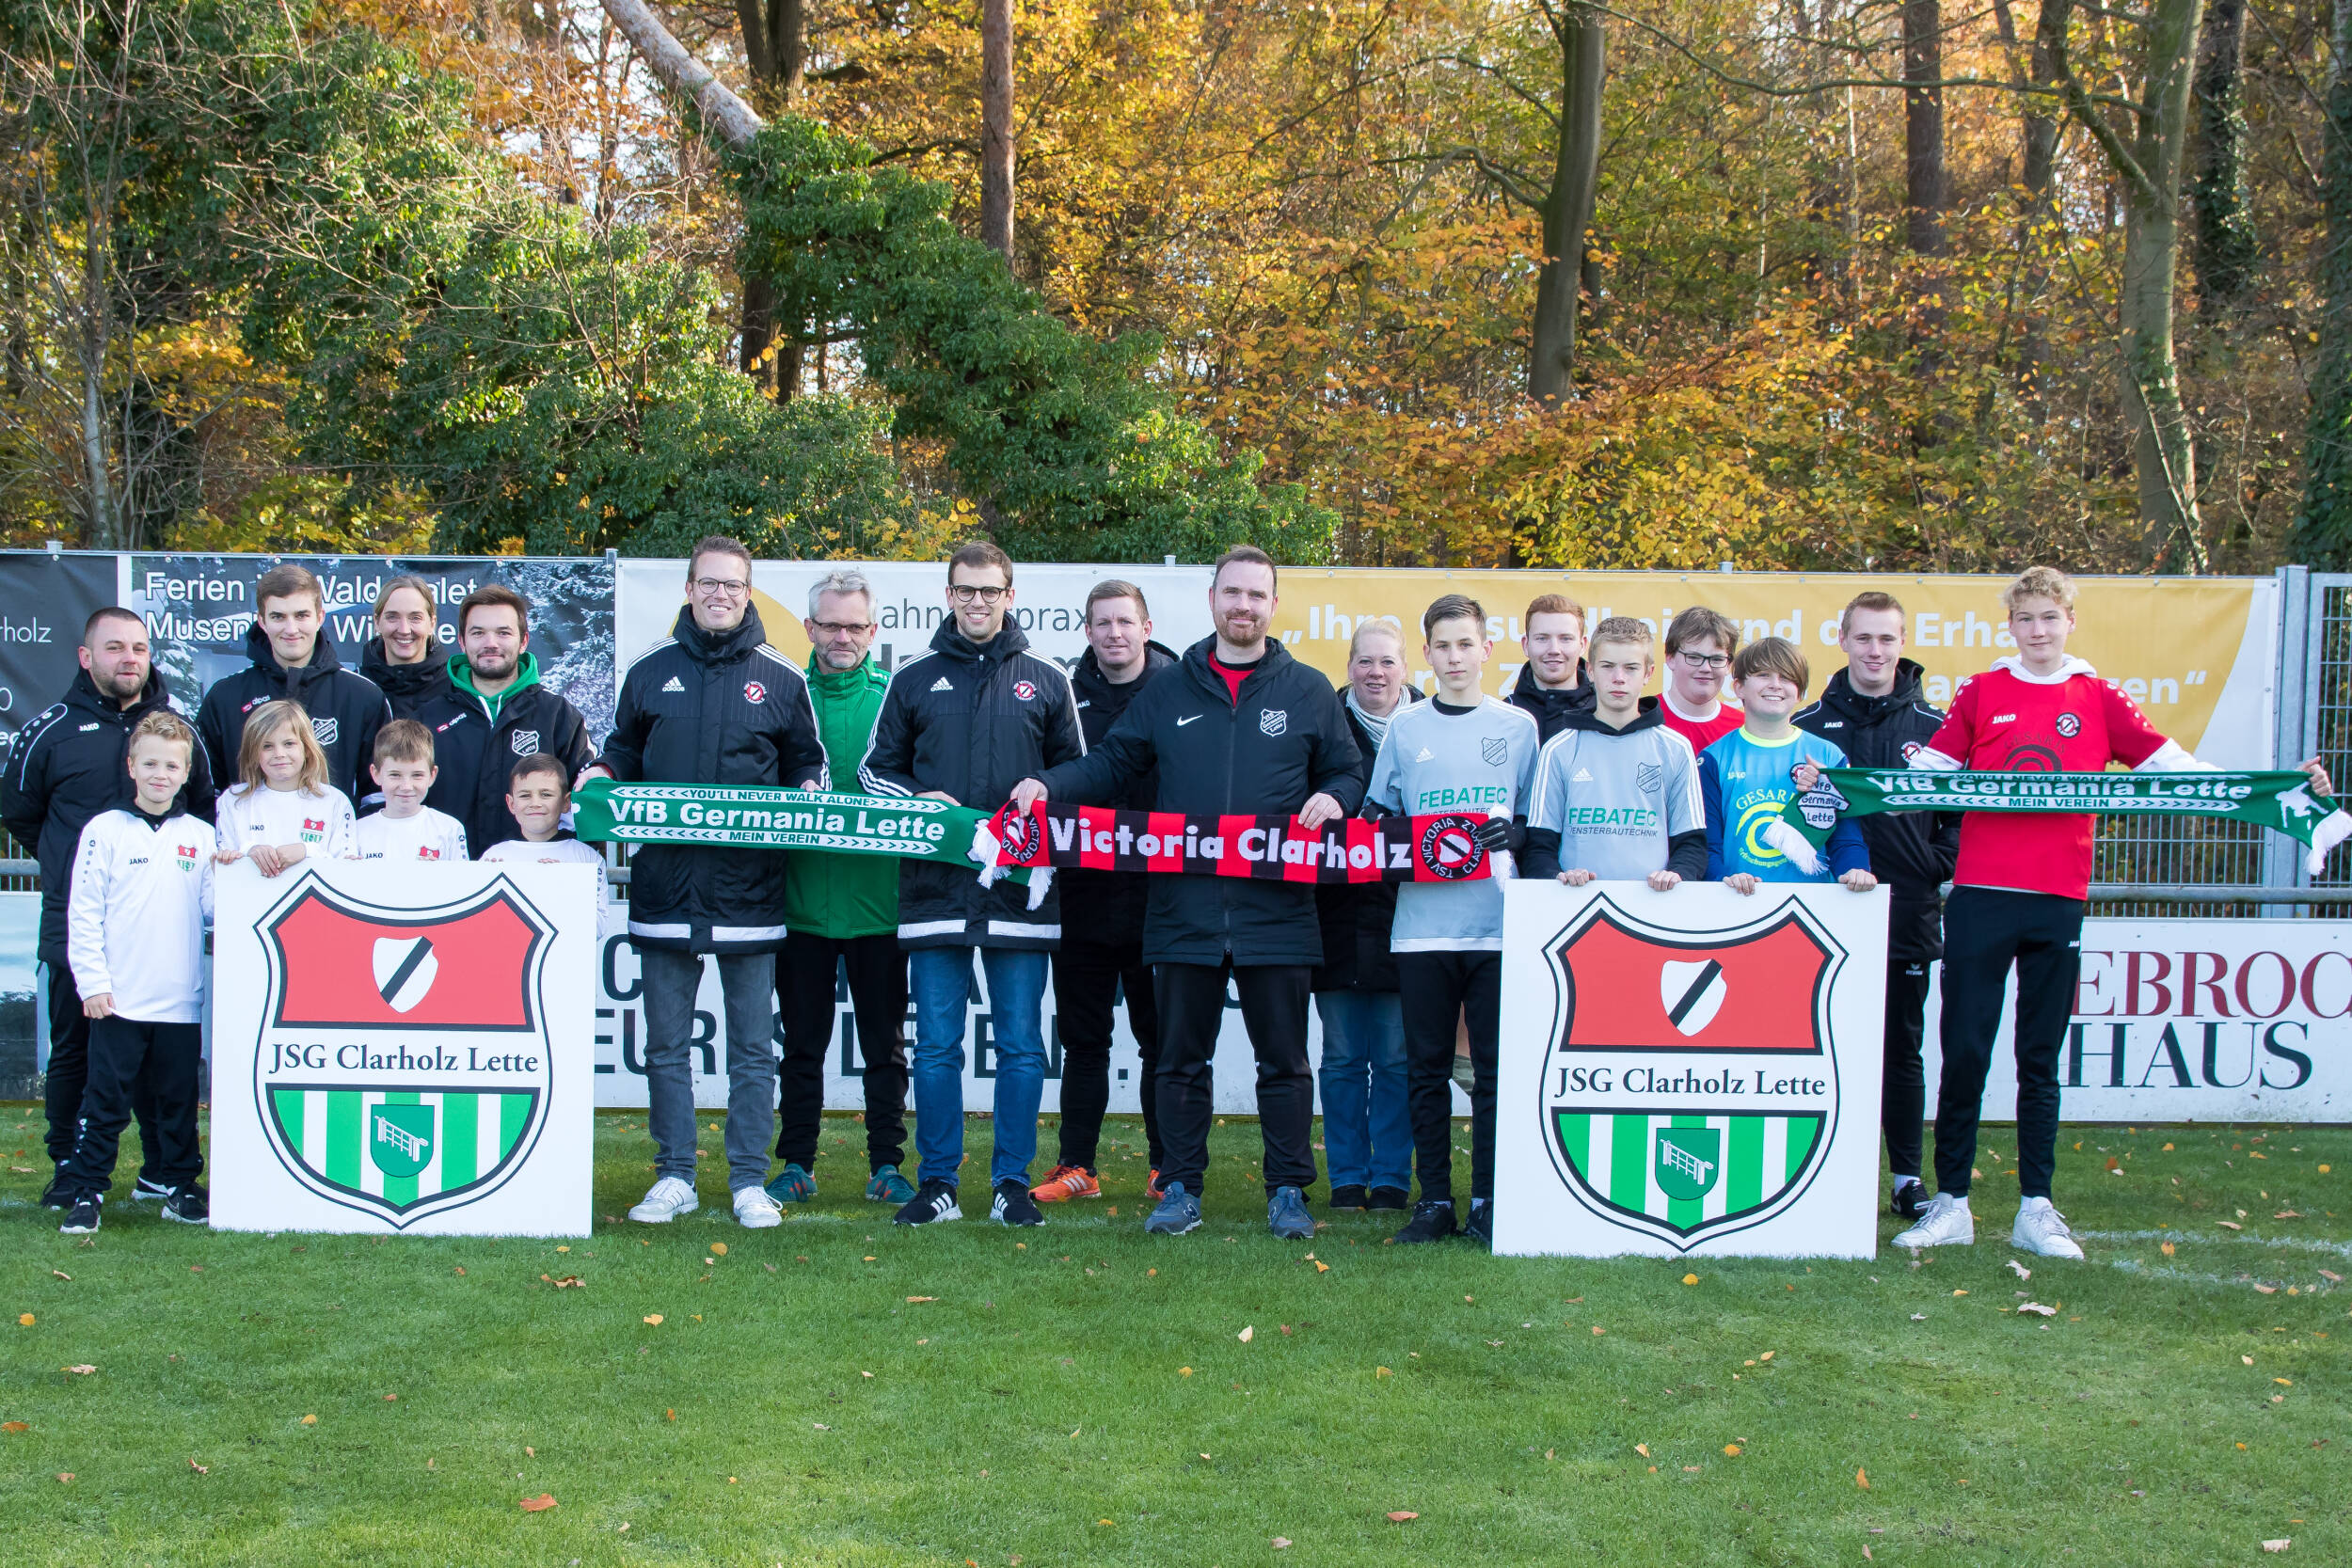 Fußball<br>Gemeinsam für die Kinder und Jugendlichen – JSG Clarholz Lette